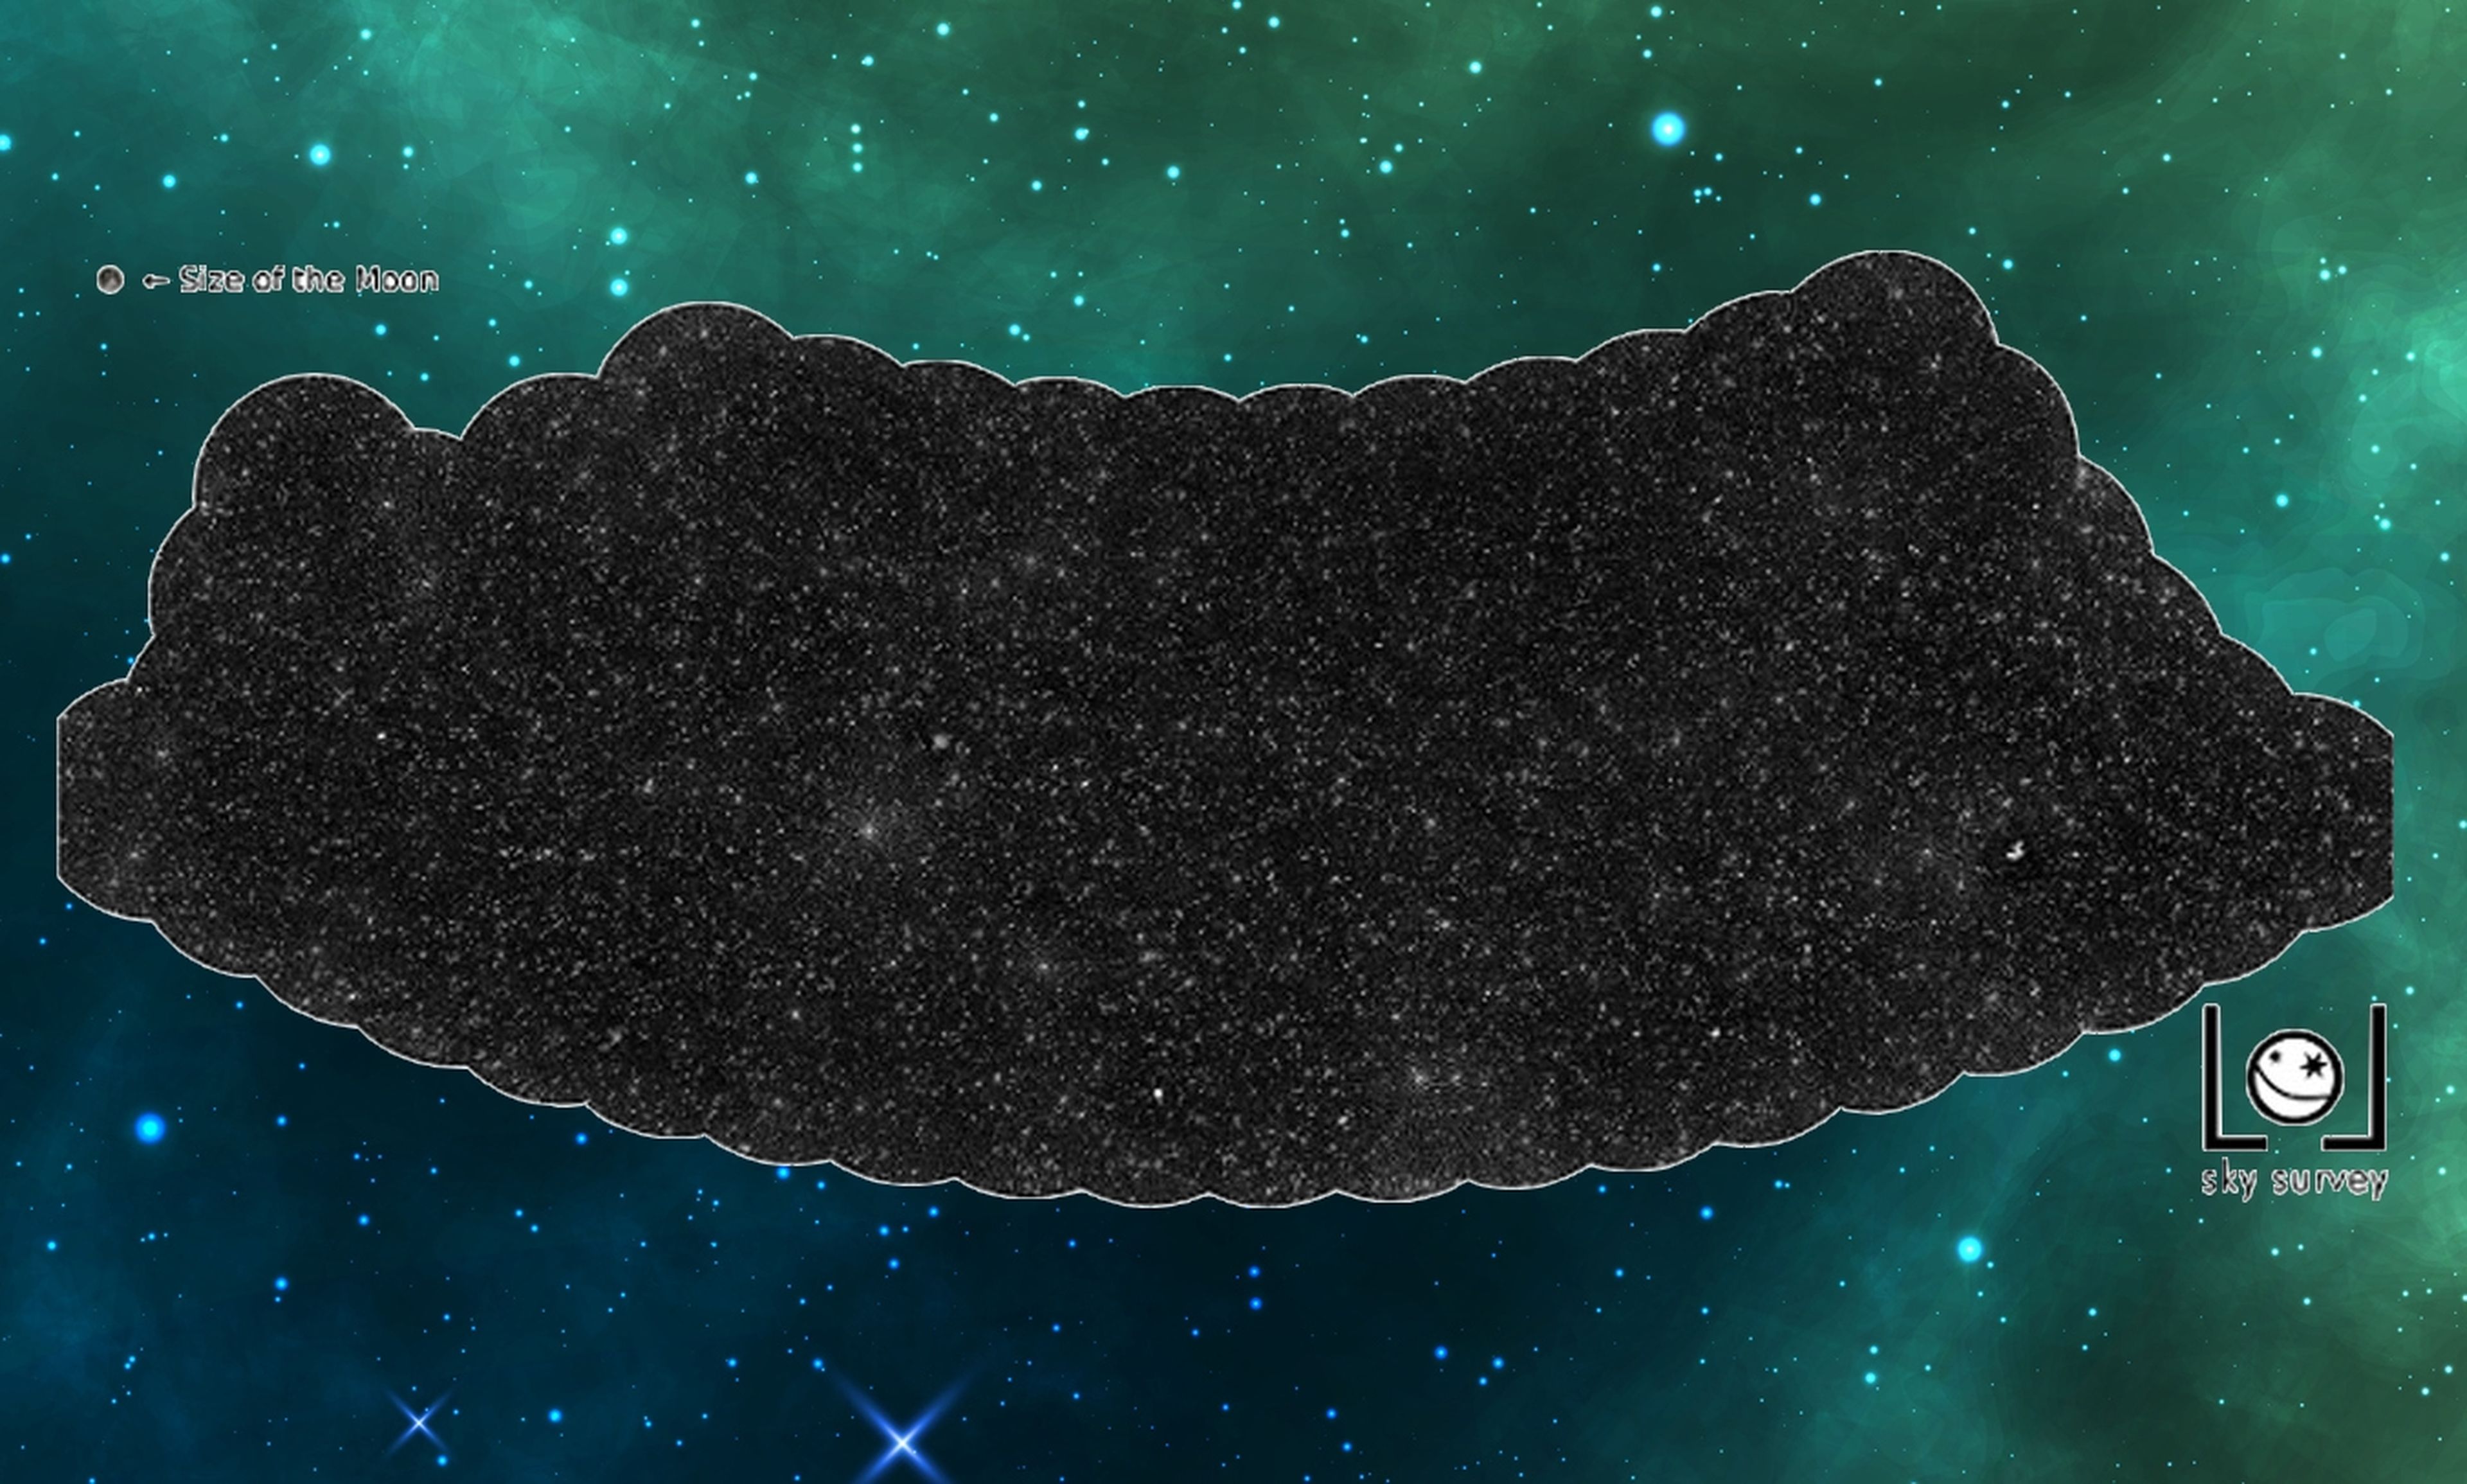 En este mapa estelar hay 25.000 agujeros negros supermasivos... Y solo cubre el 2% del cielo